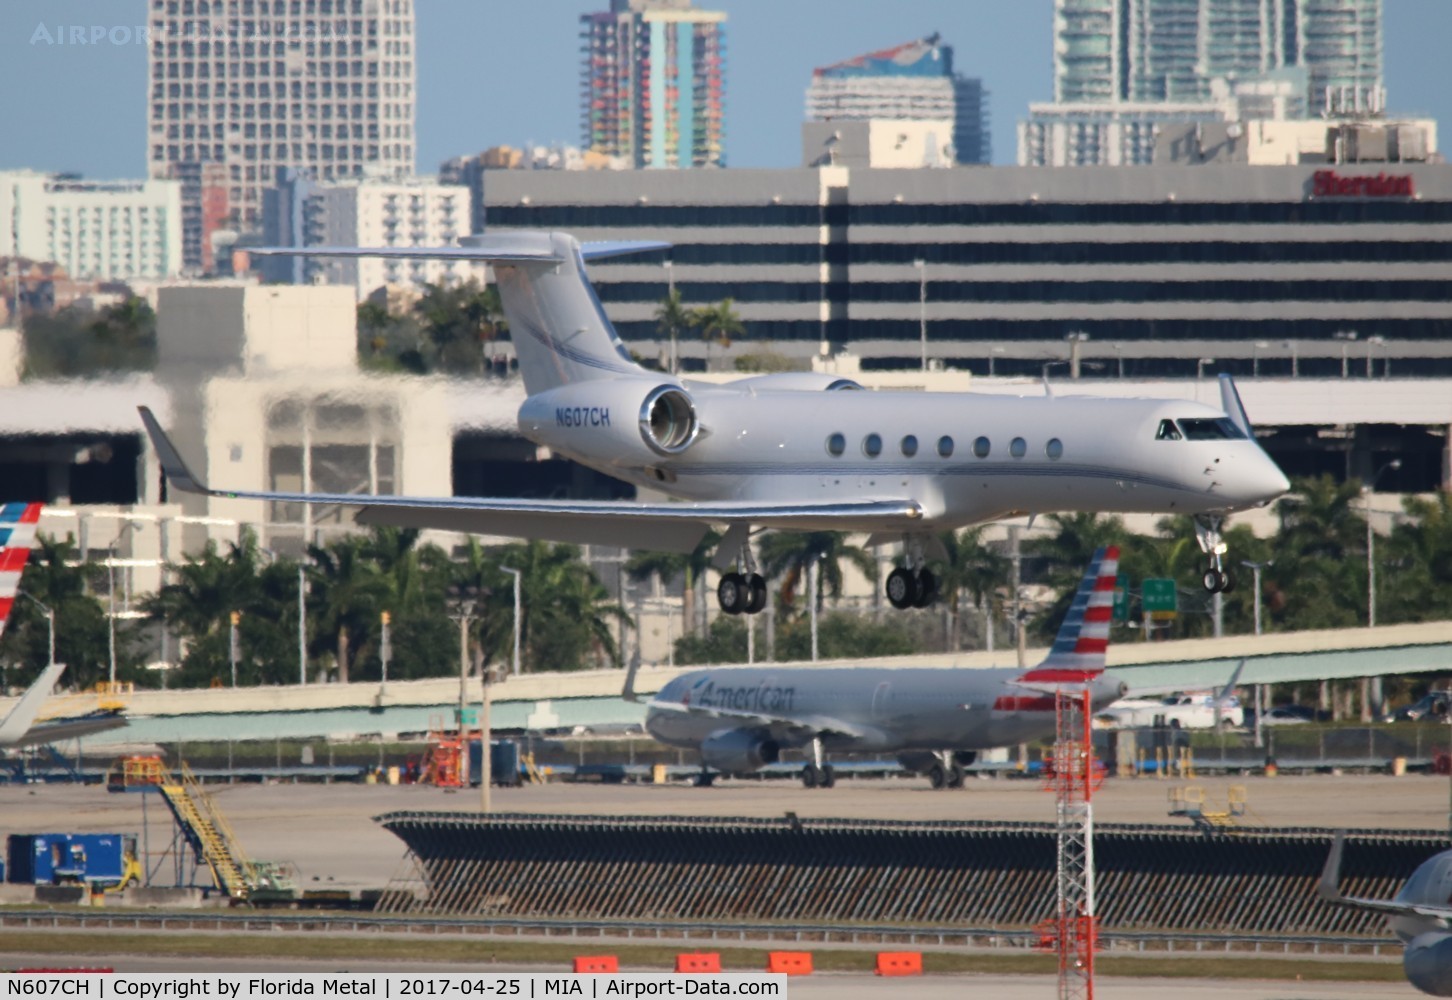 N607CH, 2007 Gulfstream Aerospace GV-SP (G550) C/N 5159, Gulfstream 550